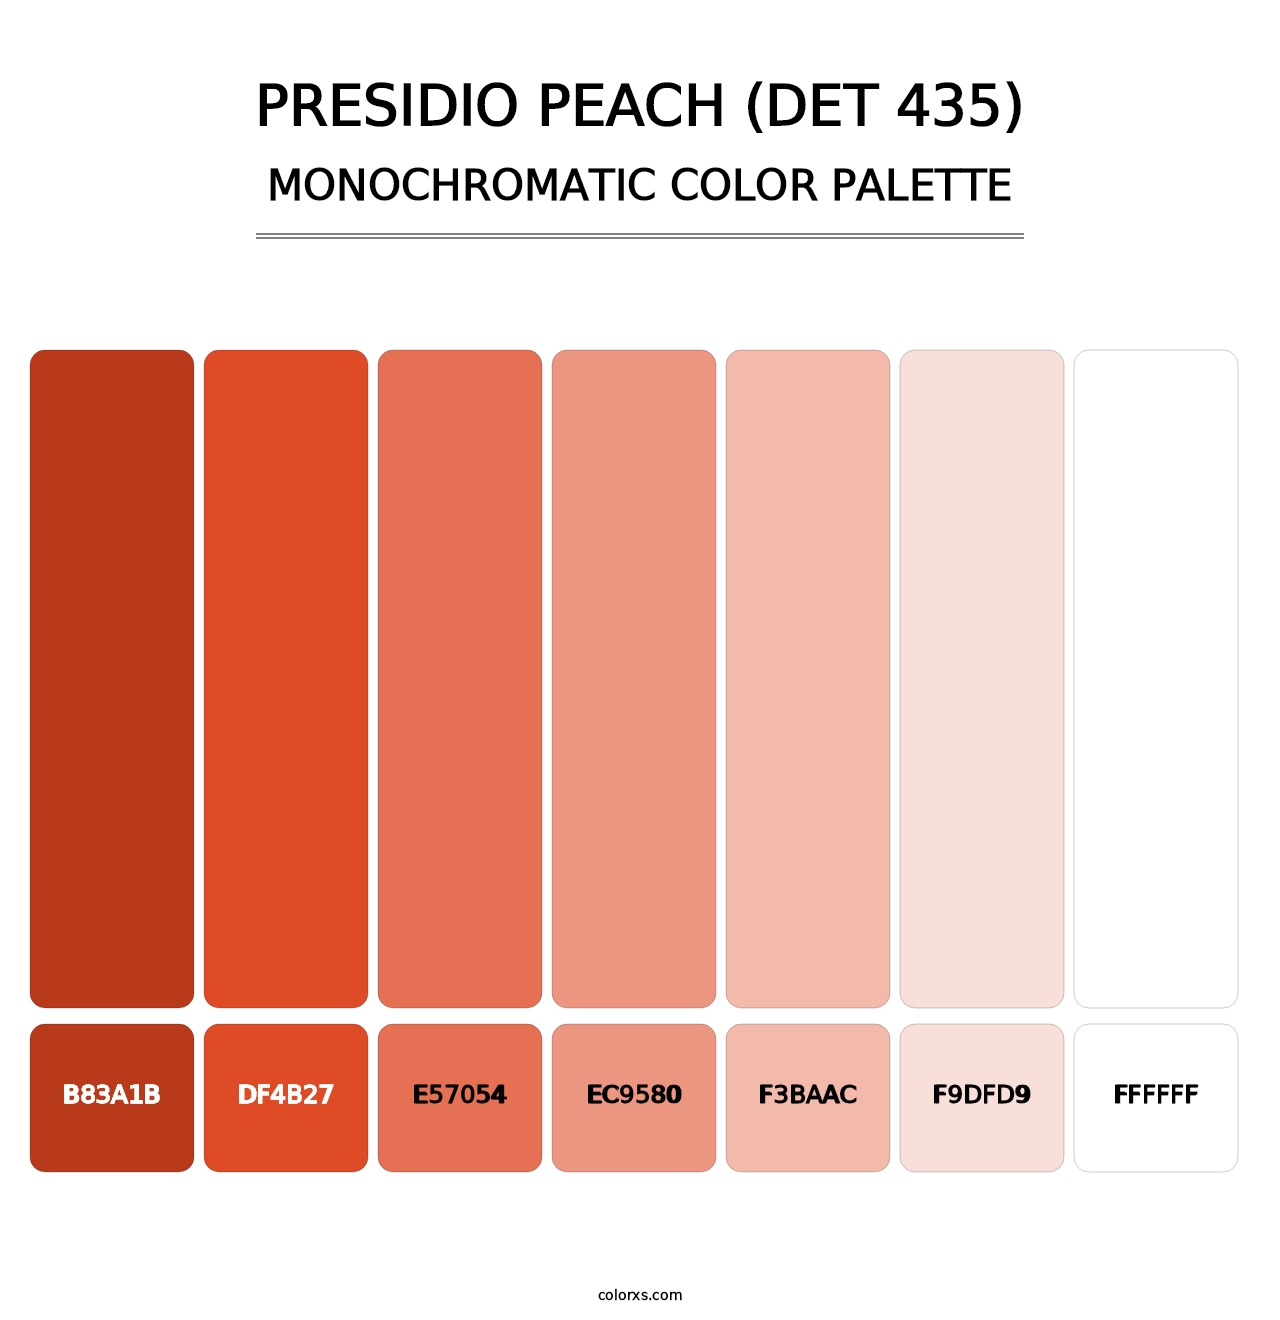 Presidio Peach (DET 435) - Monochromatic Color Palette